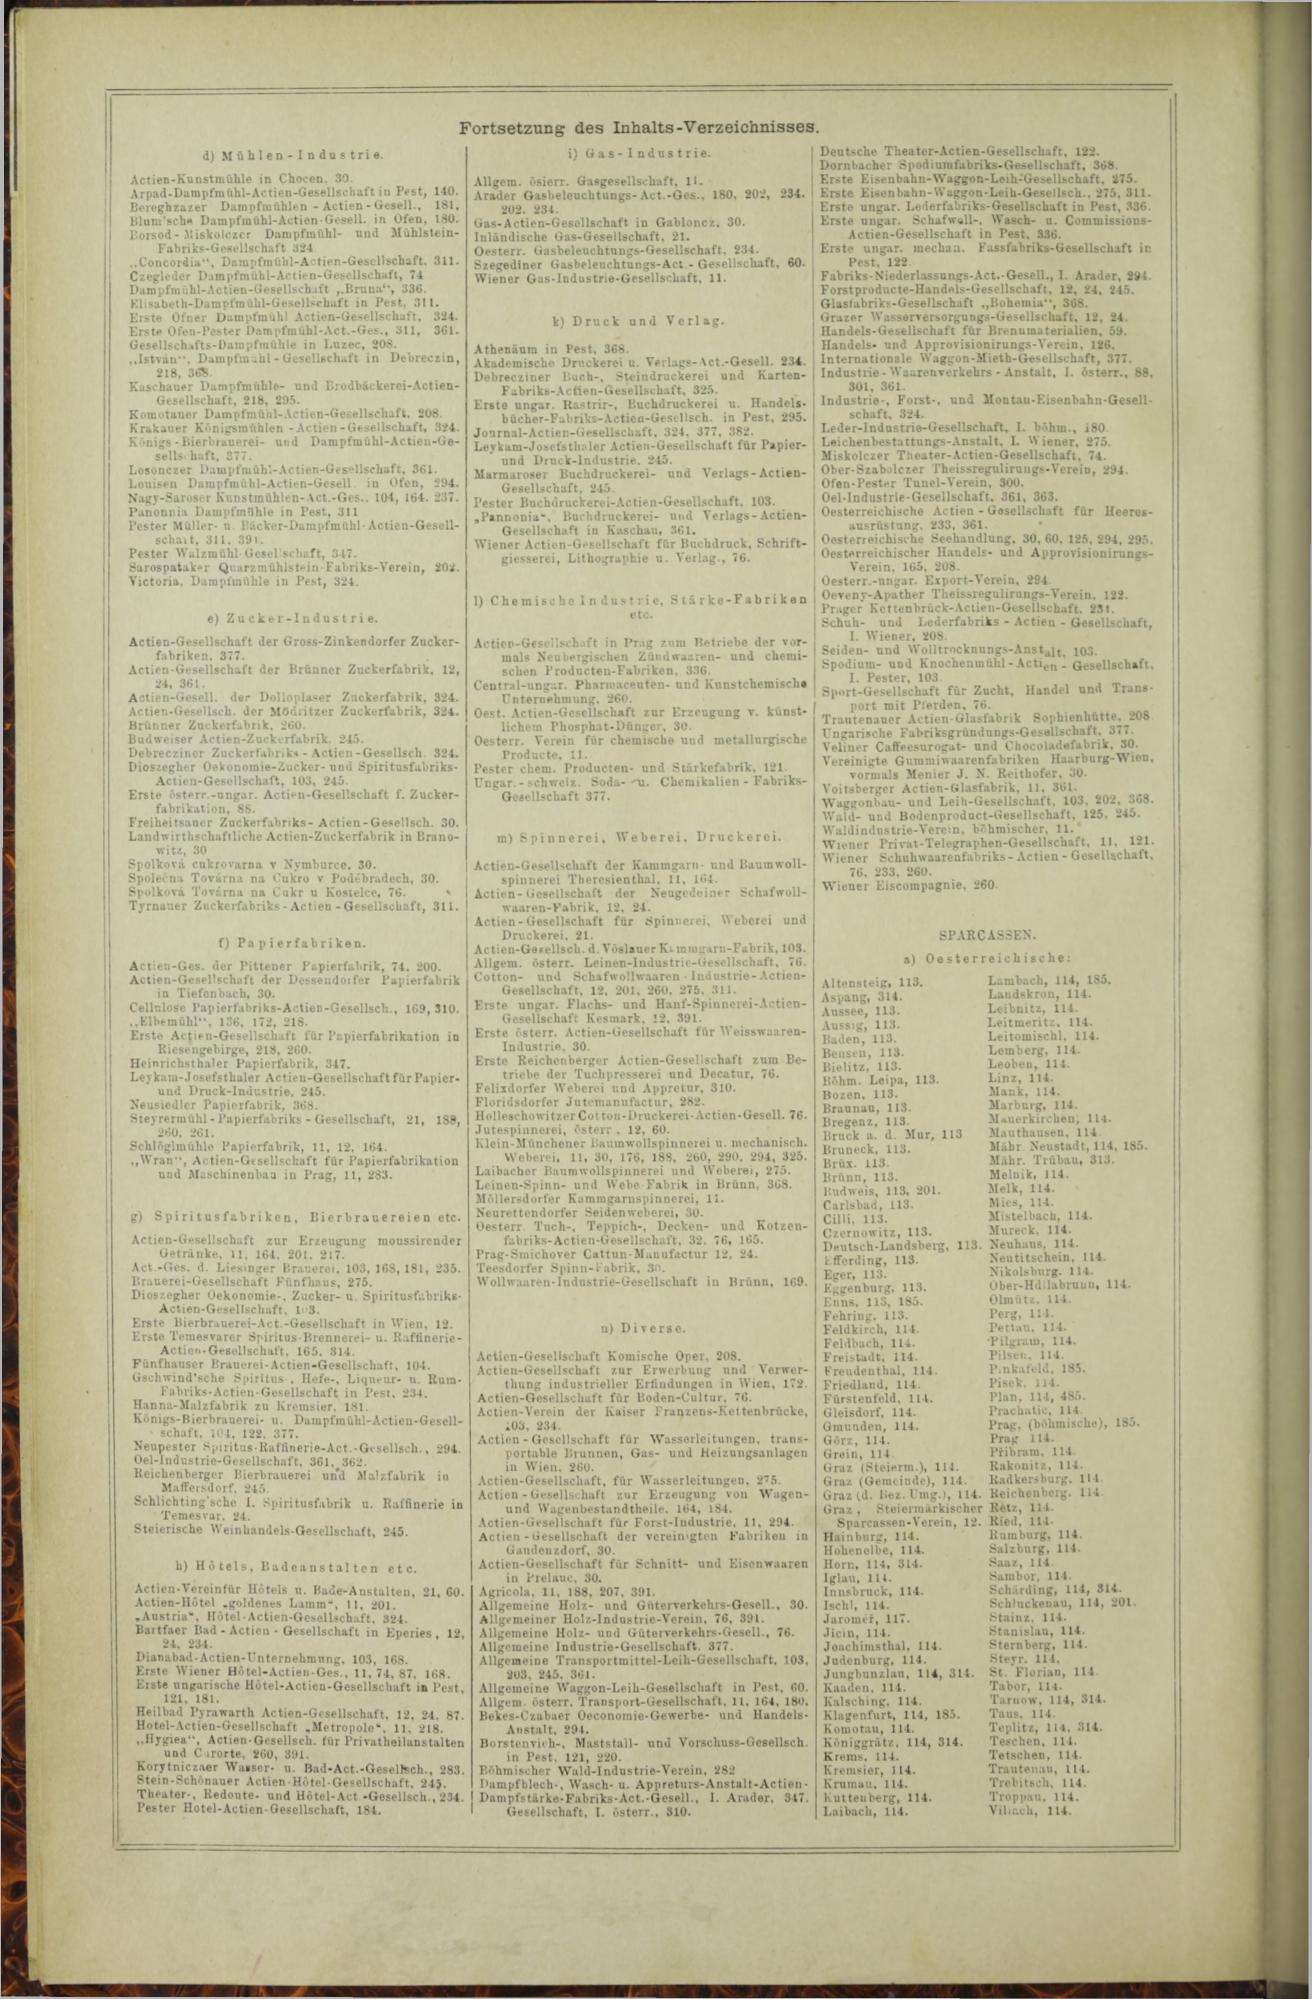 Der Tresor 21.01.1873 - Seite 20